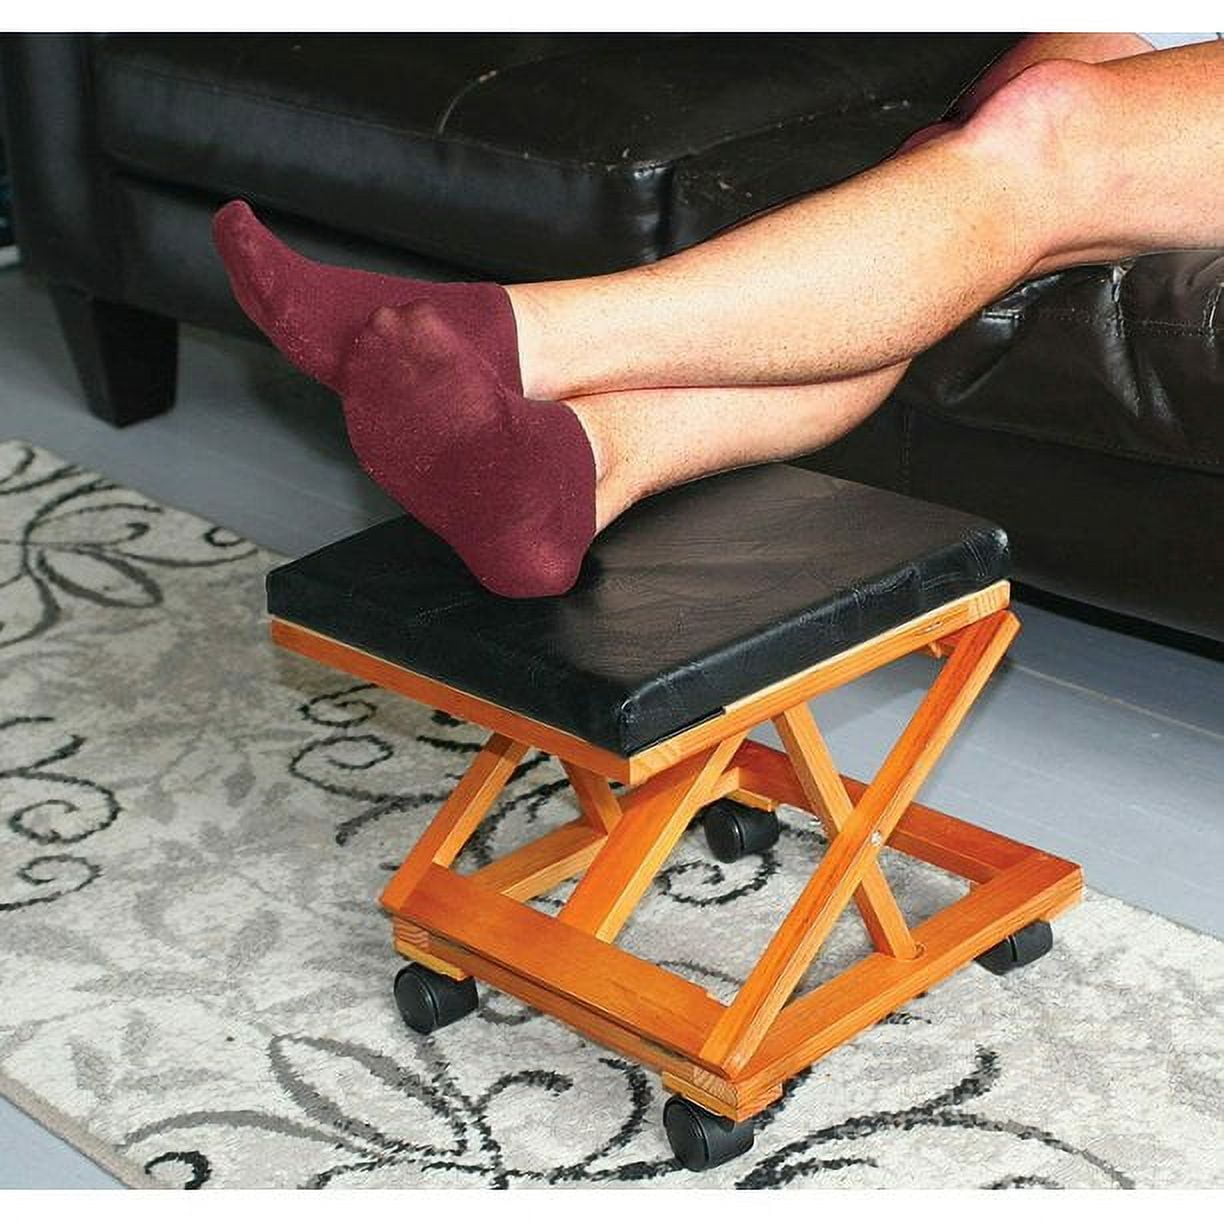 Footrest Foldaway Elevated Foot Stool Under Desk - Adjustable